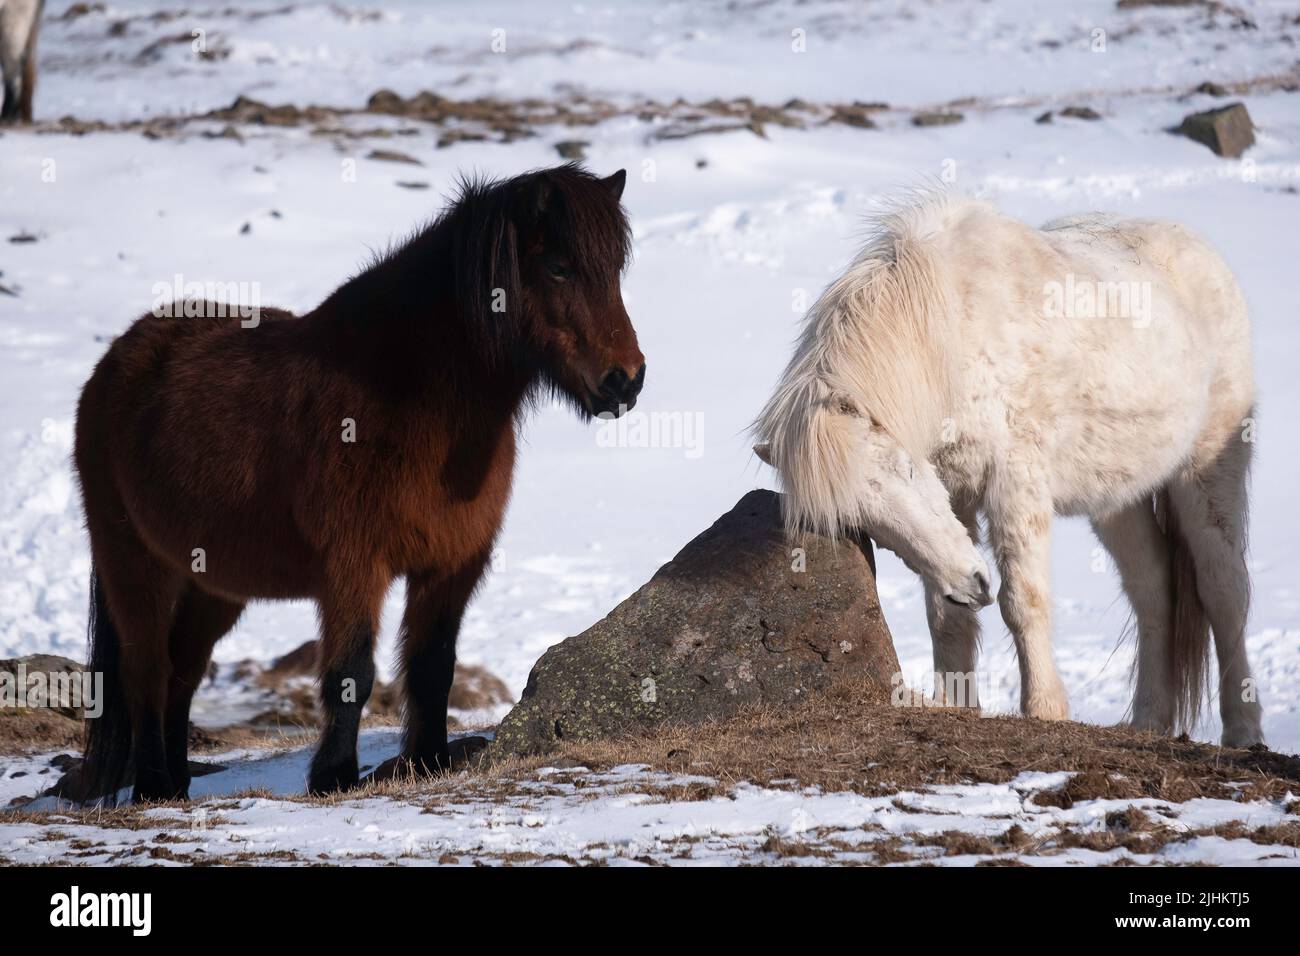 Los caballos islandeses en invierno, uno se está rascando sobre una roca con nieve en el fondo Foto de stock